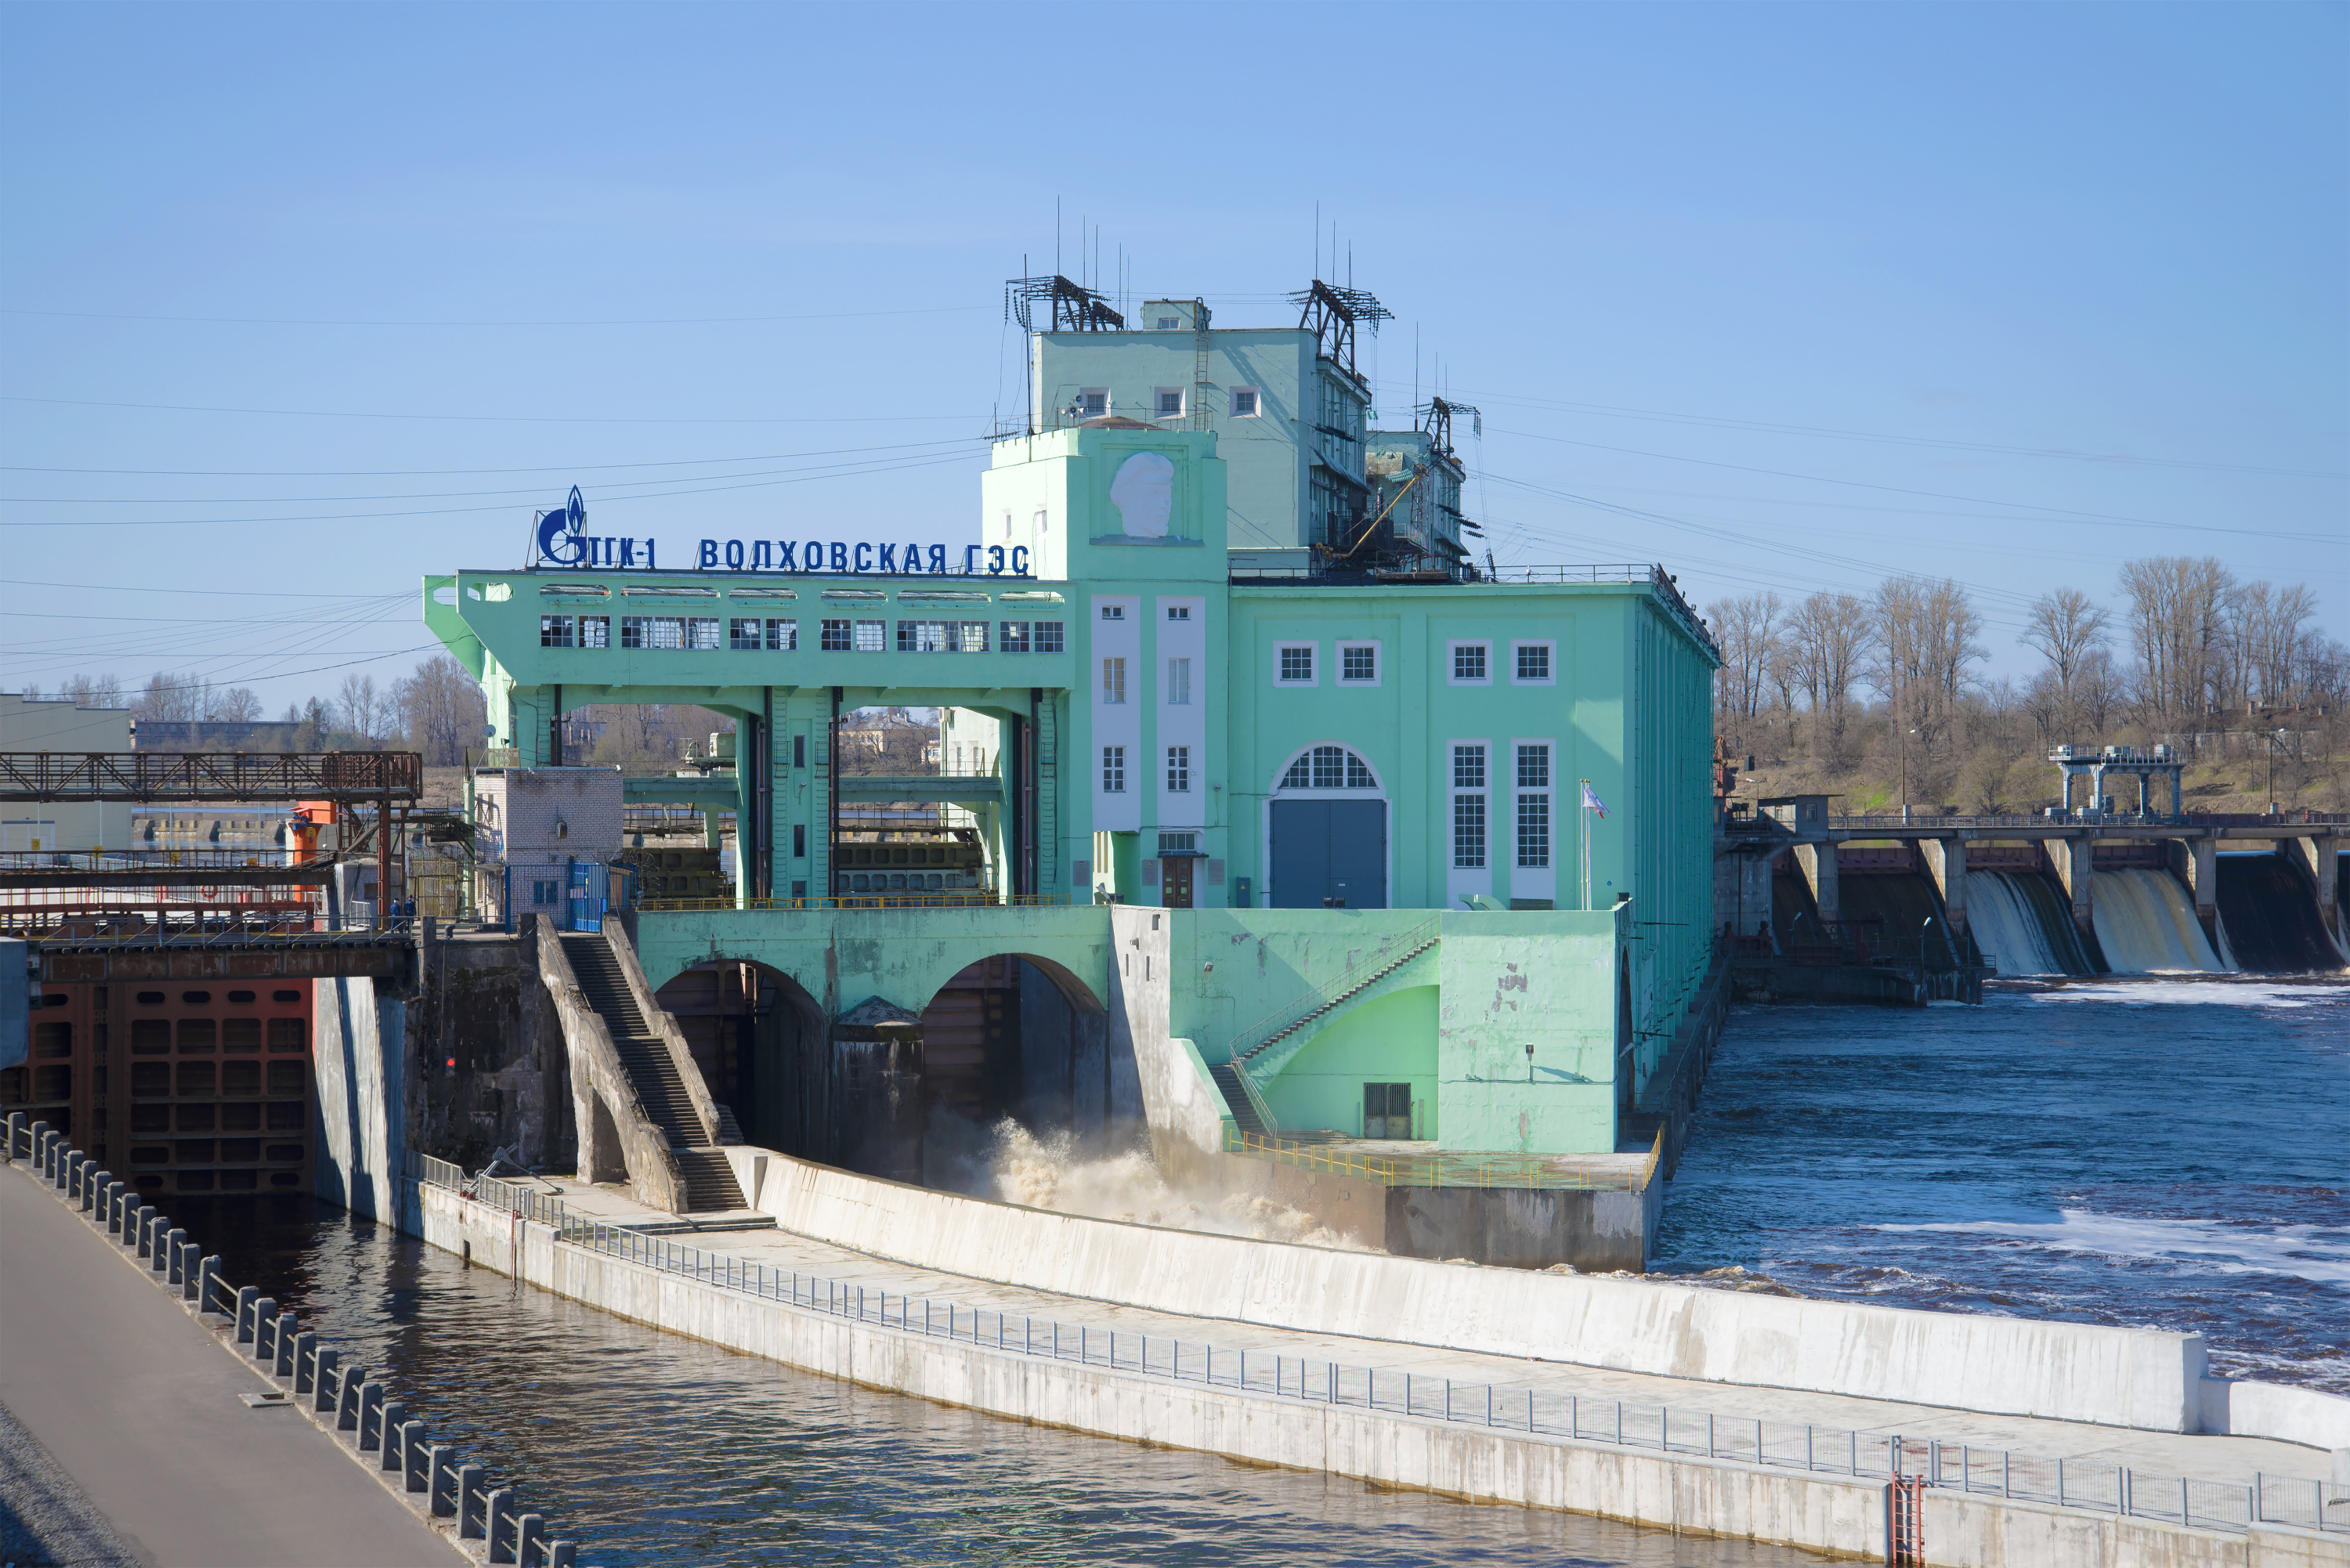 Волховская ГЭС — одна из главных достопримечательностей города